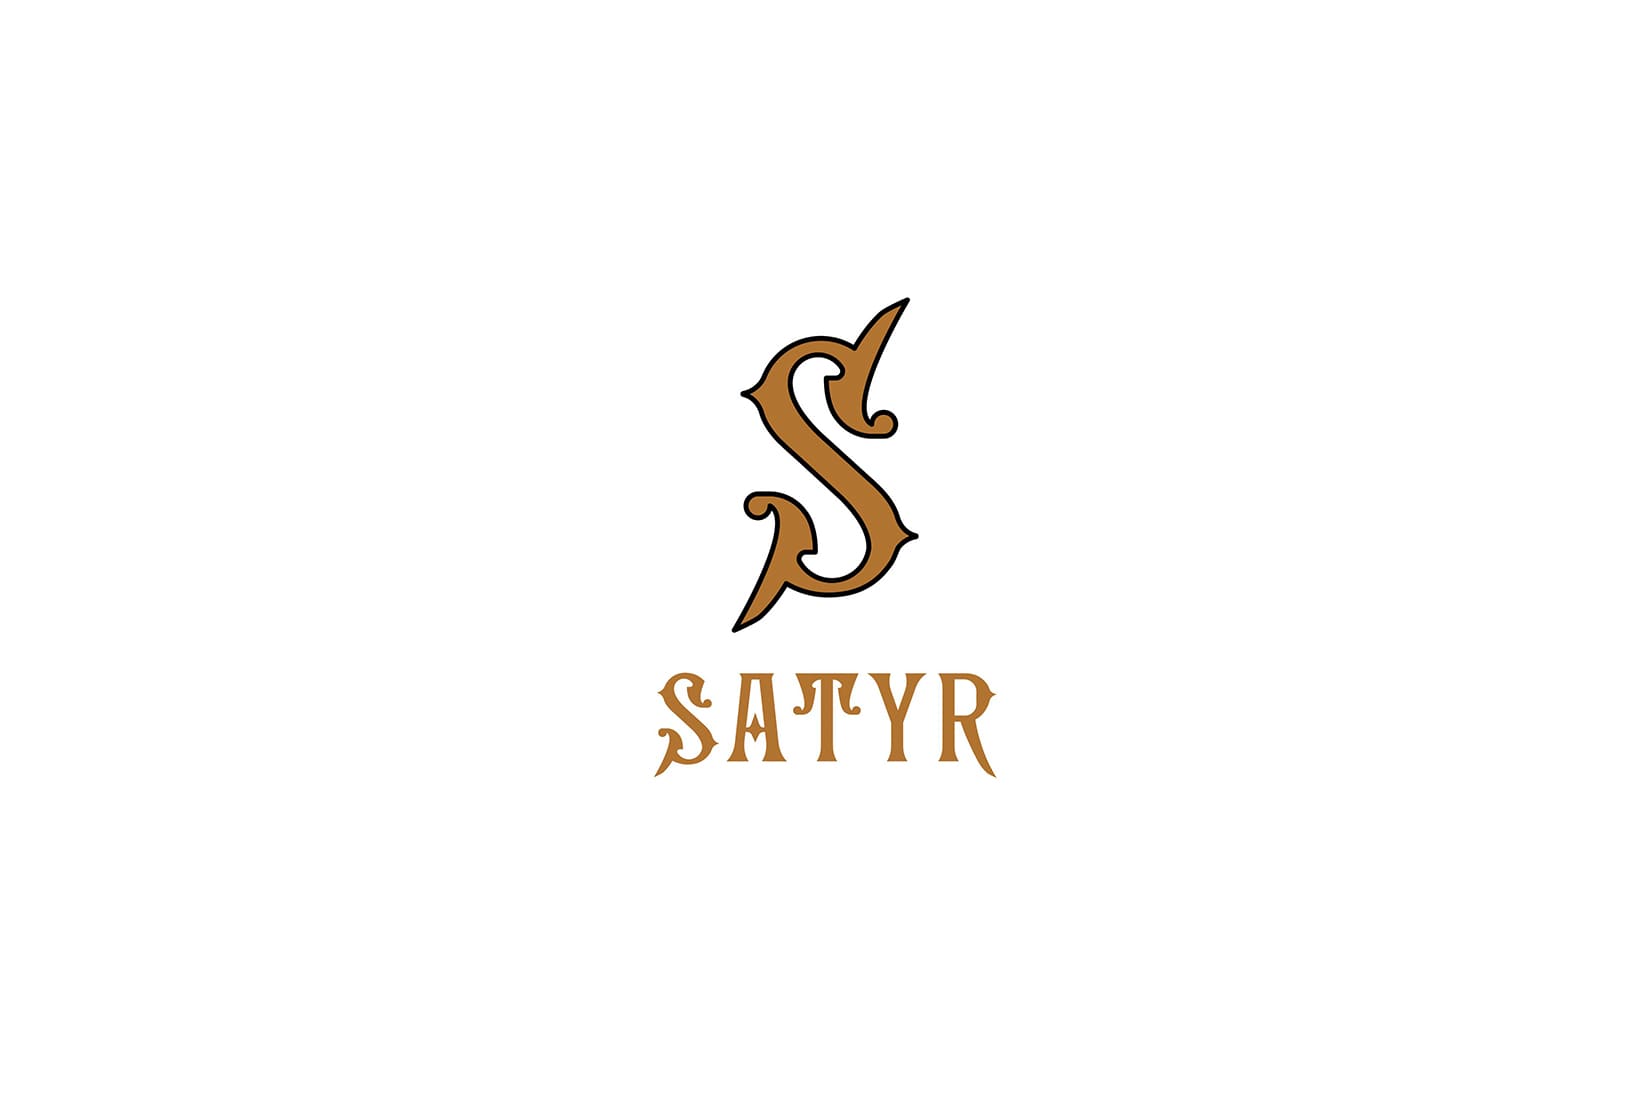 Табак для кальяна Satyr Platinum Collection — WHISKY IN THE JAR. Описание и миксы